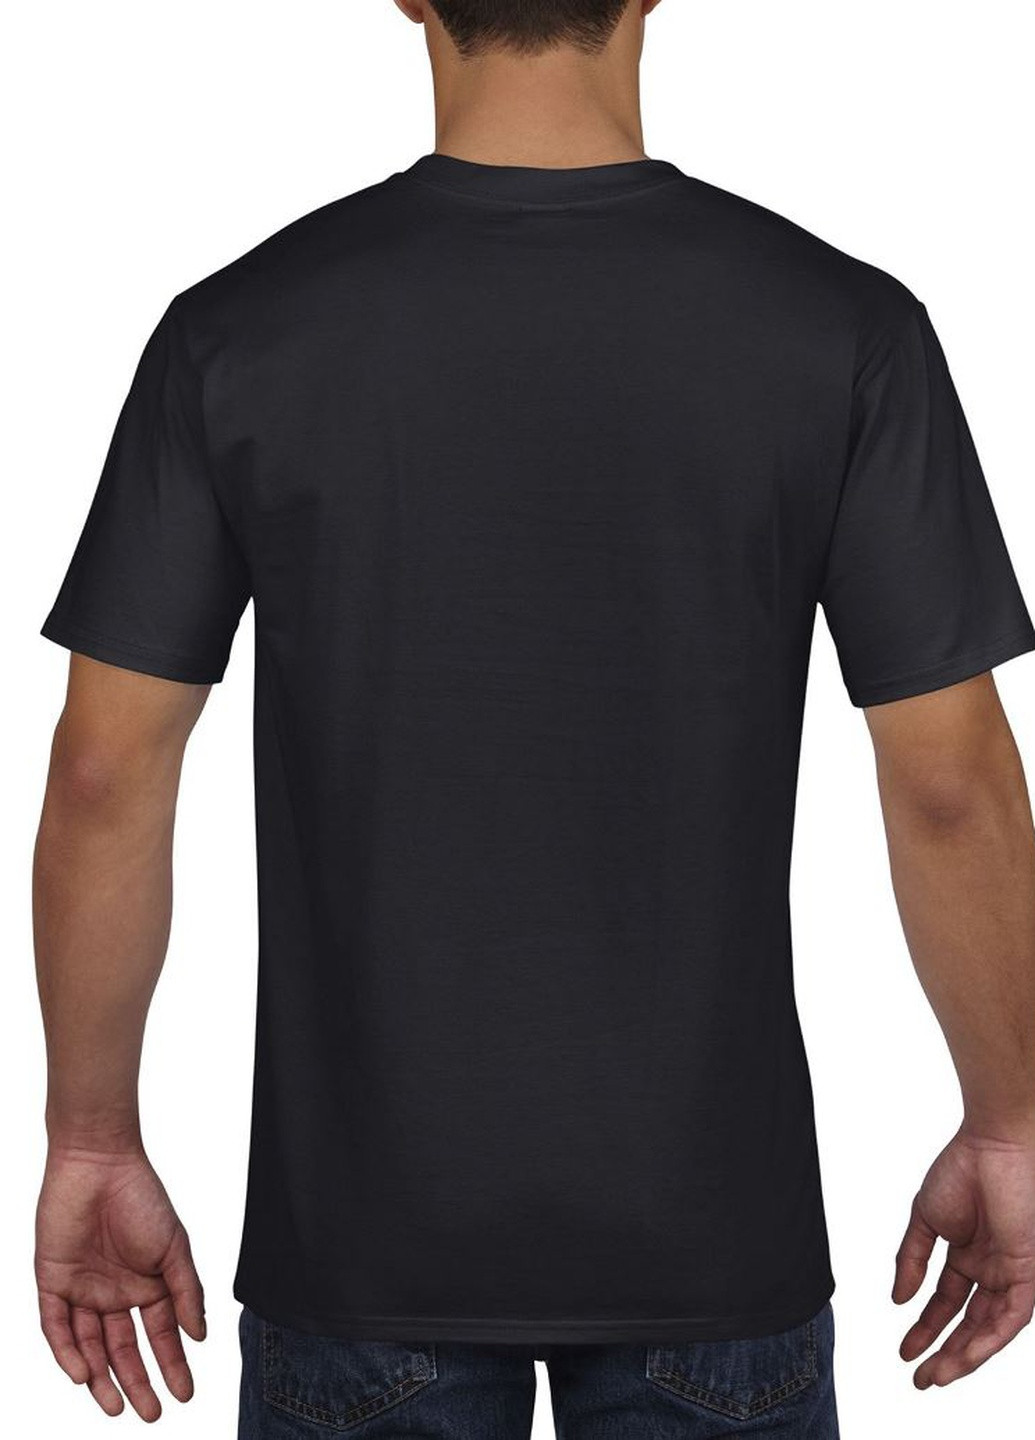 Черная футболка базовая хлопковая чёрная Gildan Premium Cotton